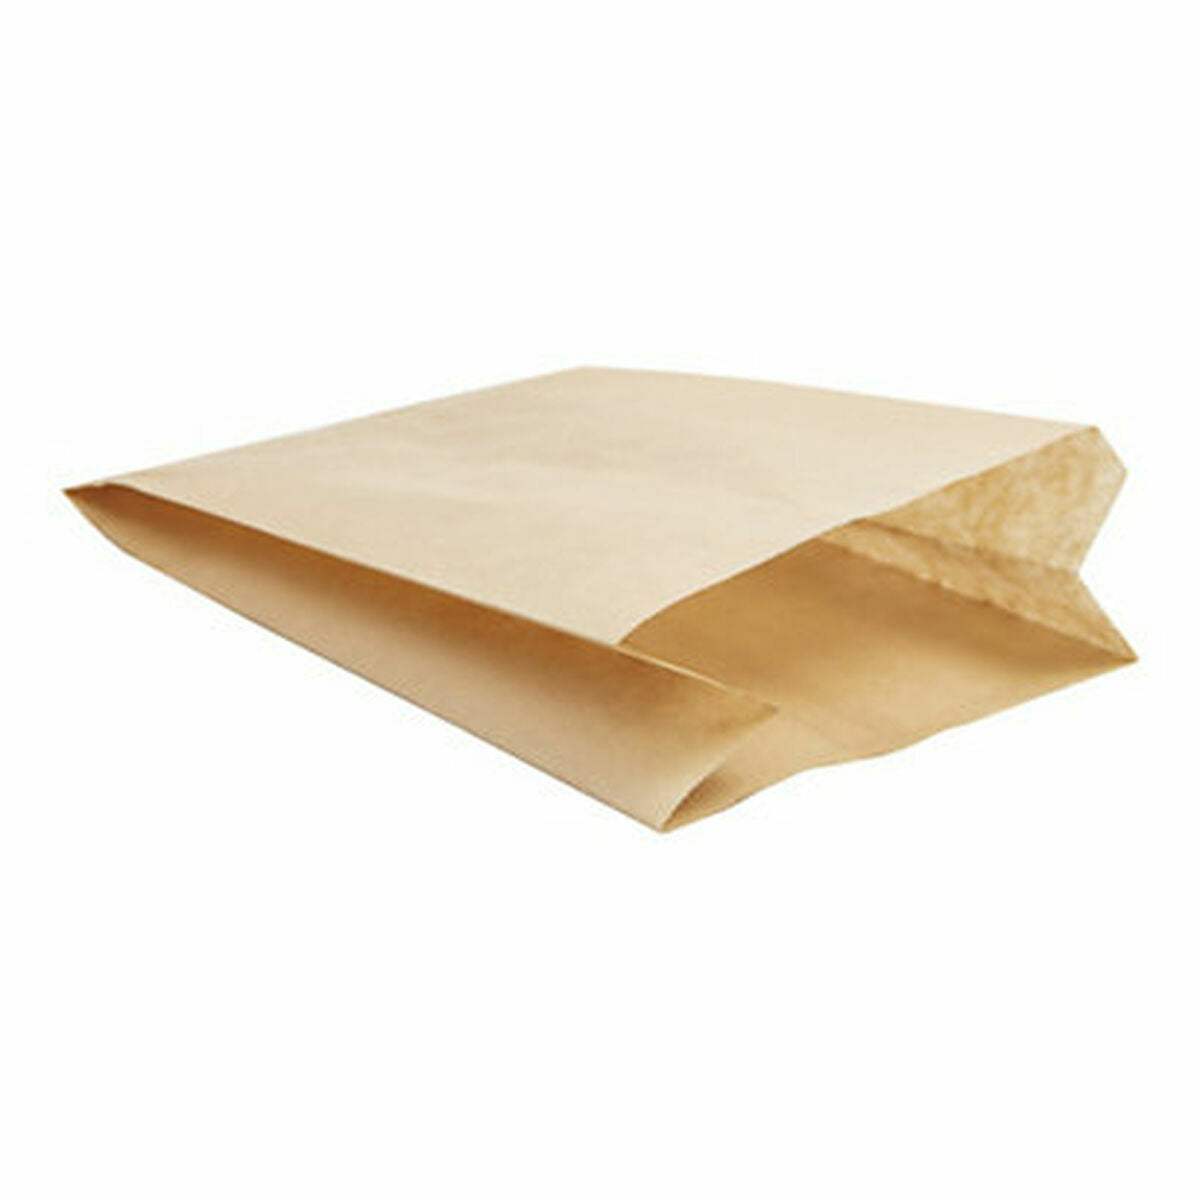 Ensemble de sacs alimentaires réutilisables Algon 16 x 21 cm (24 Unités)